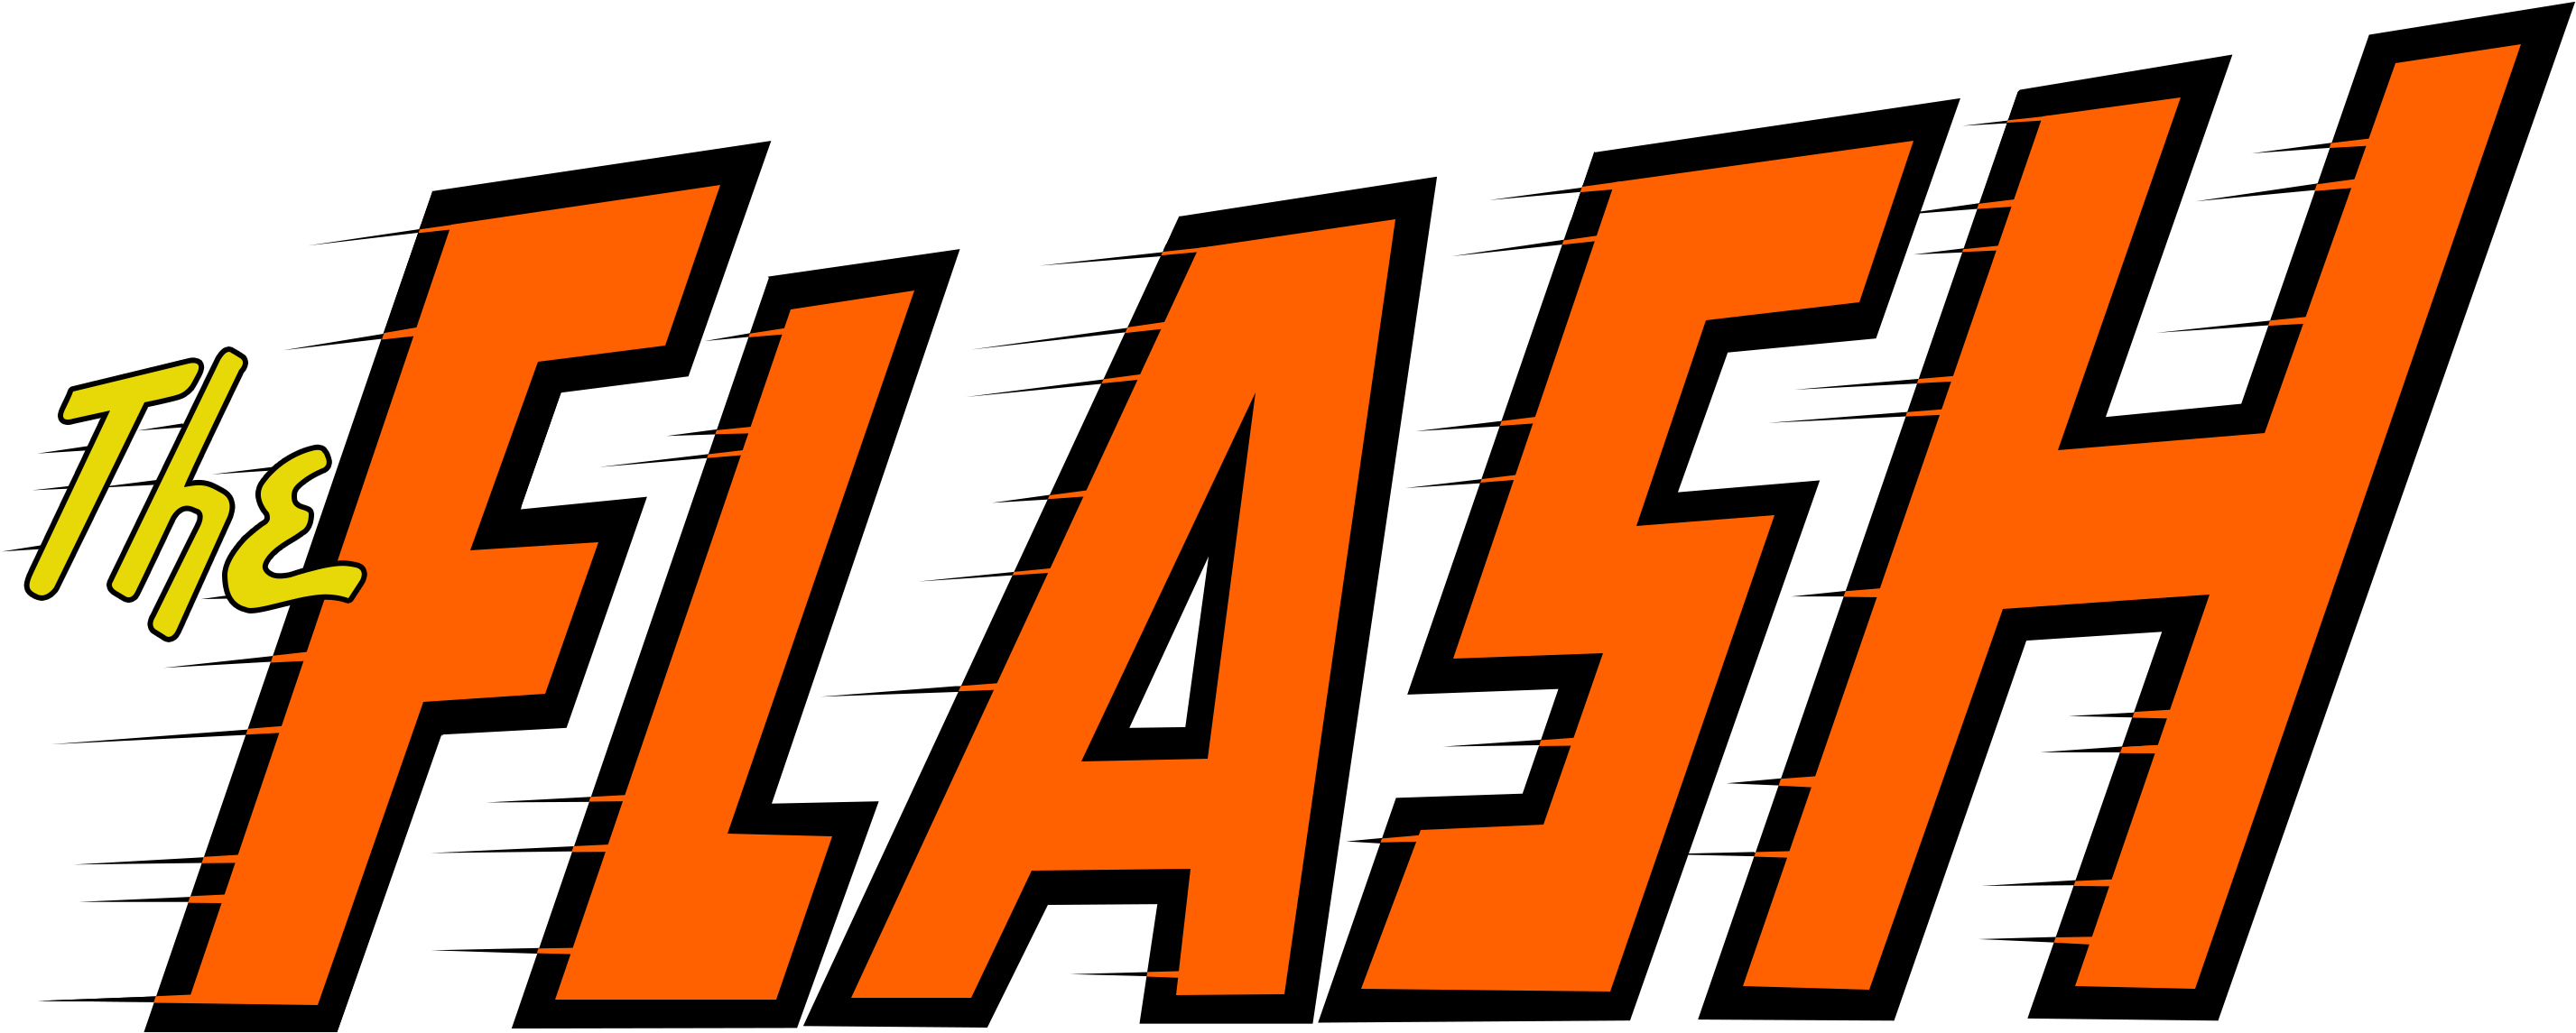 Flash Logo PNG Высококачественные изображения